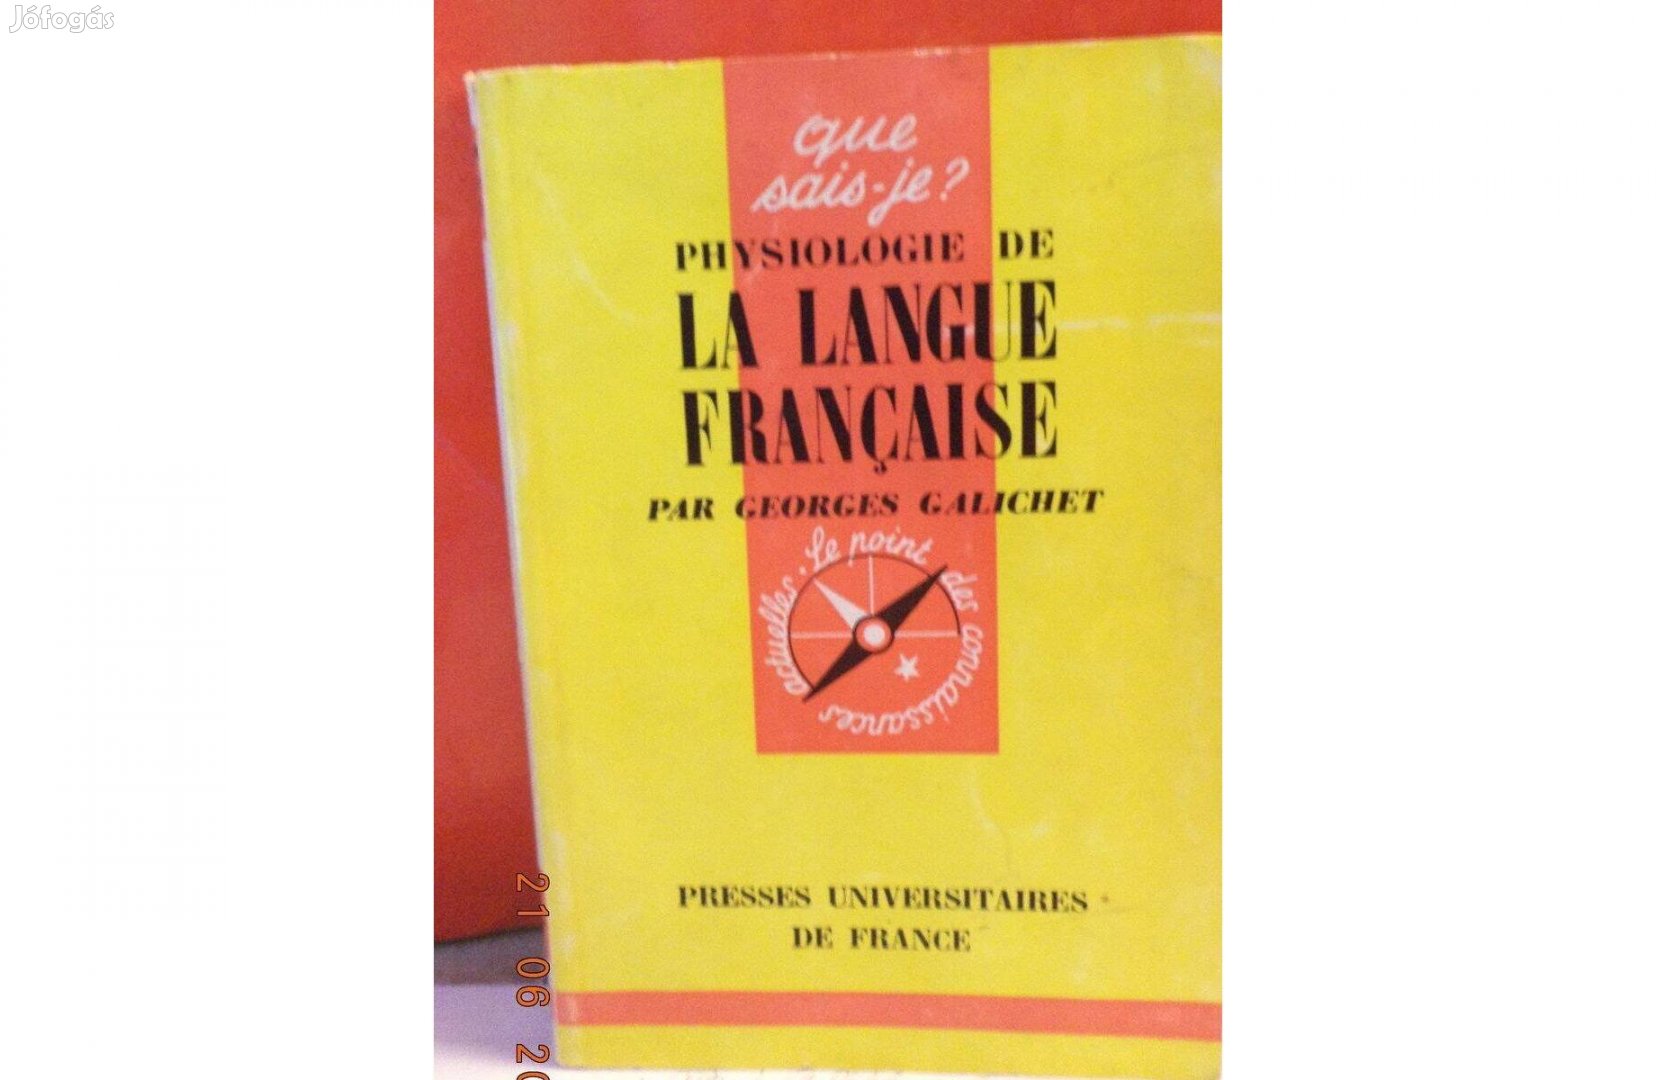 Physiologie de la langue francaise